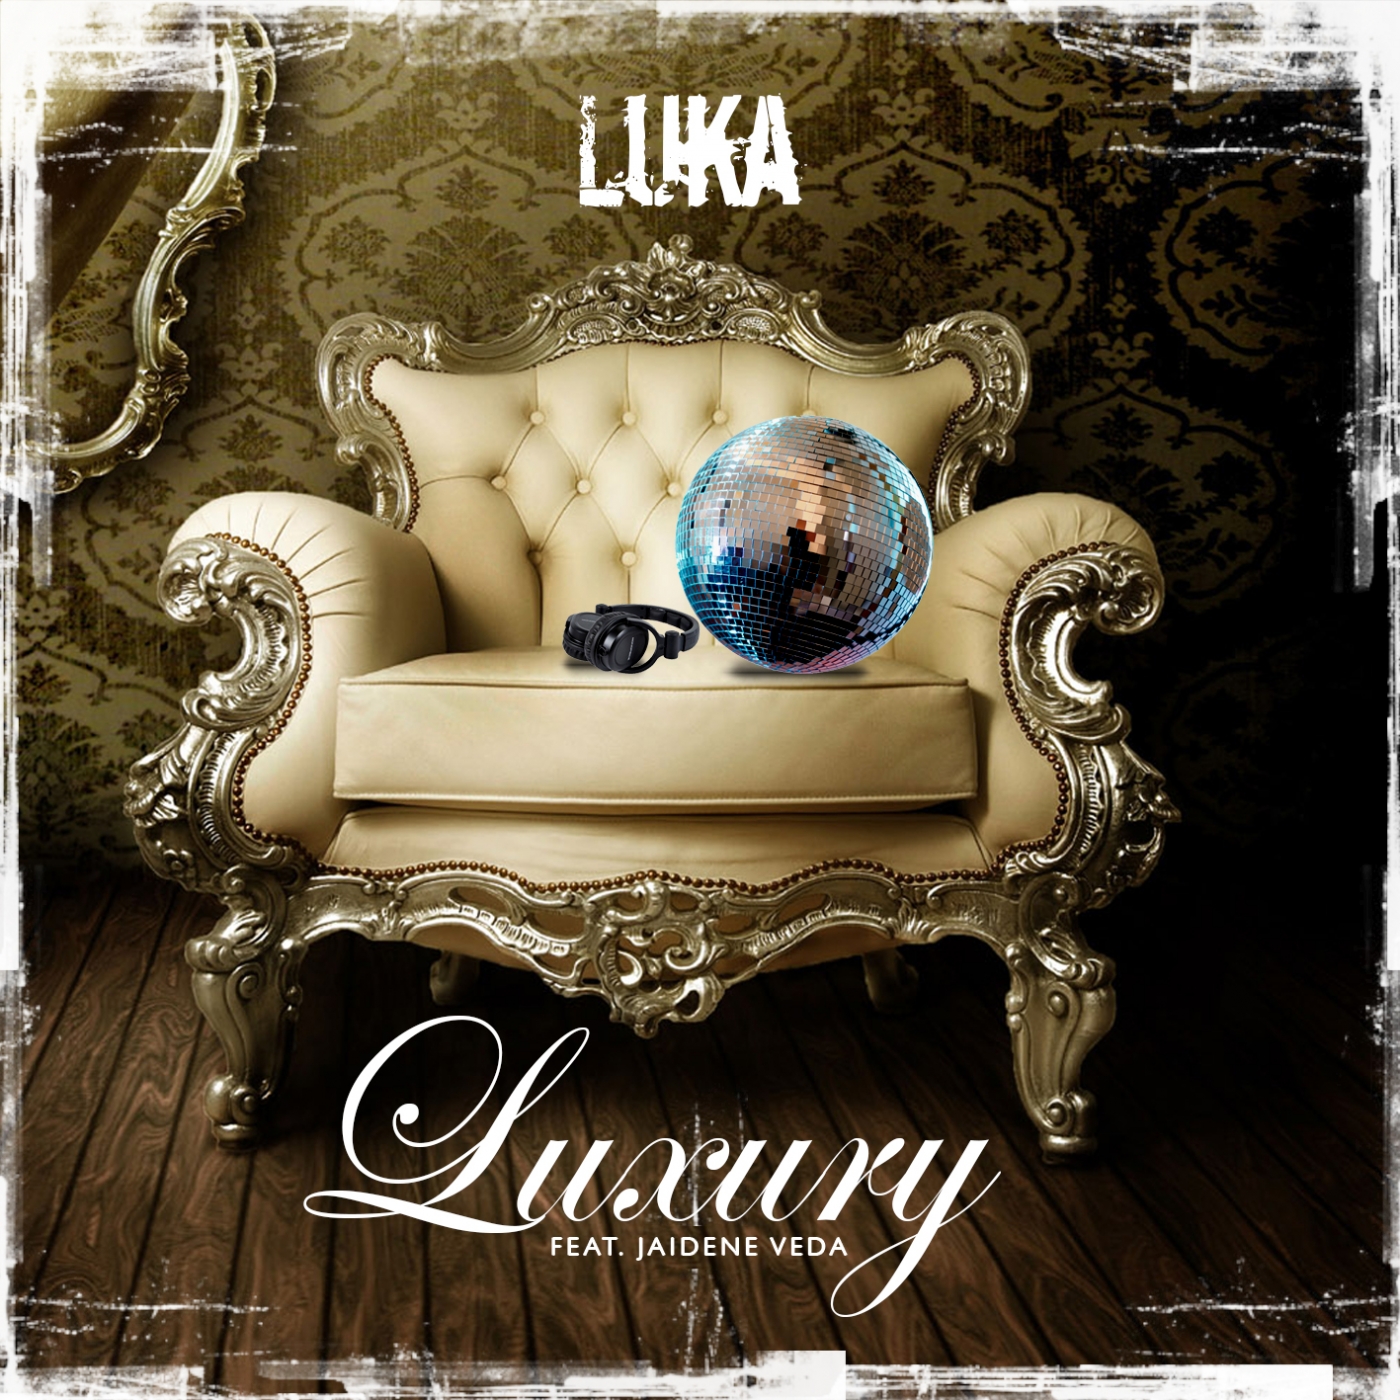 Лакшери альбом. Лакшери альбом обложка. Обложка для трека Luxury. Luxury Cover album. Luka feat